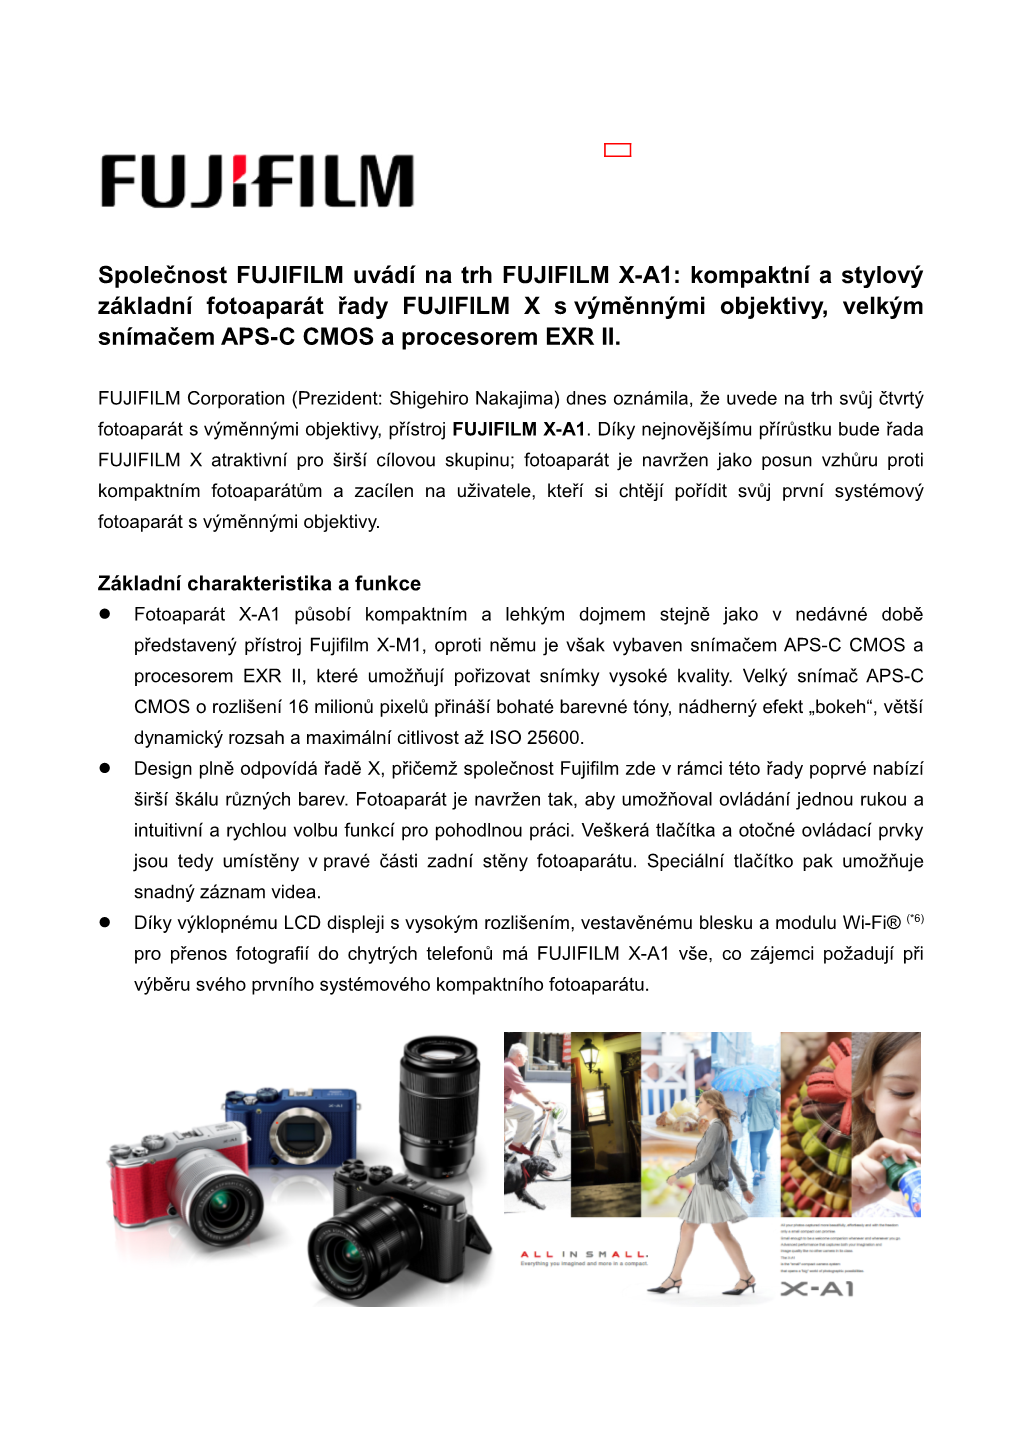 Společnost FUJIFILM Uvádí Na Trh FUJIFILM X-A1: Kompaktní a Stylový